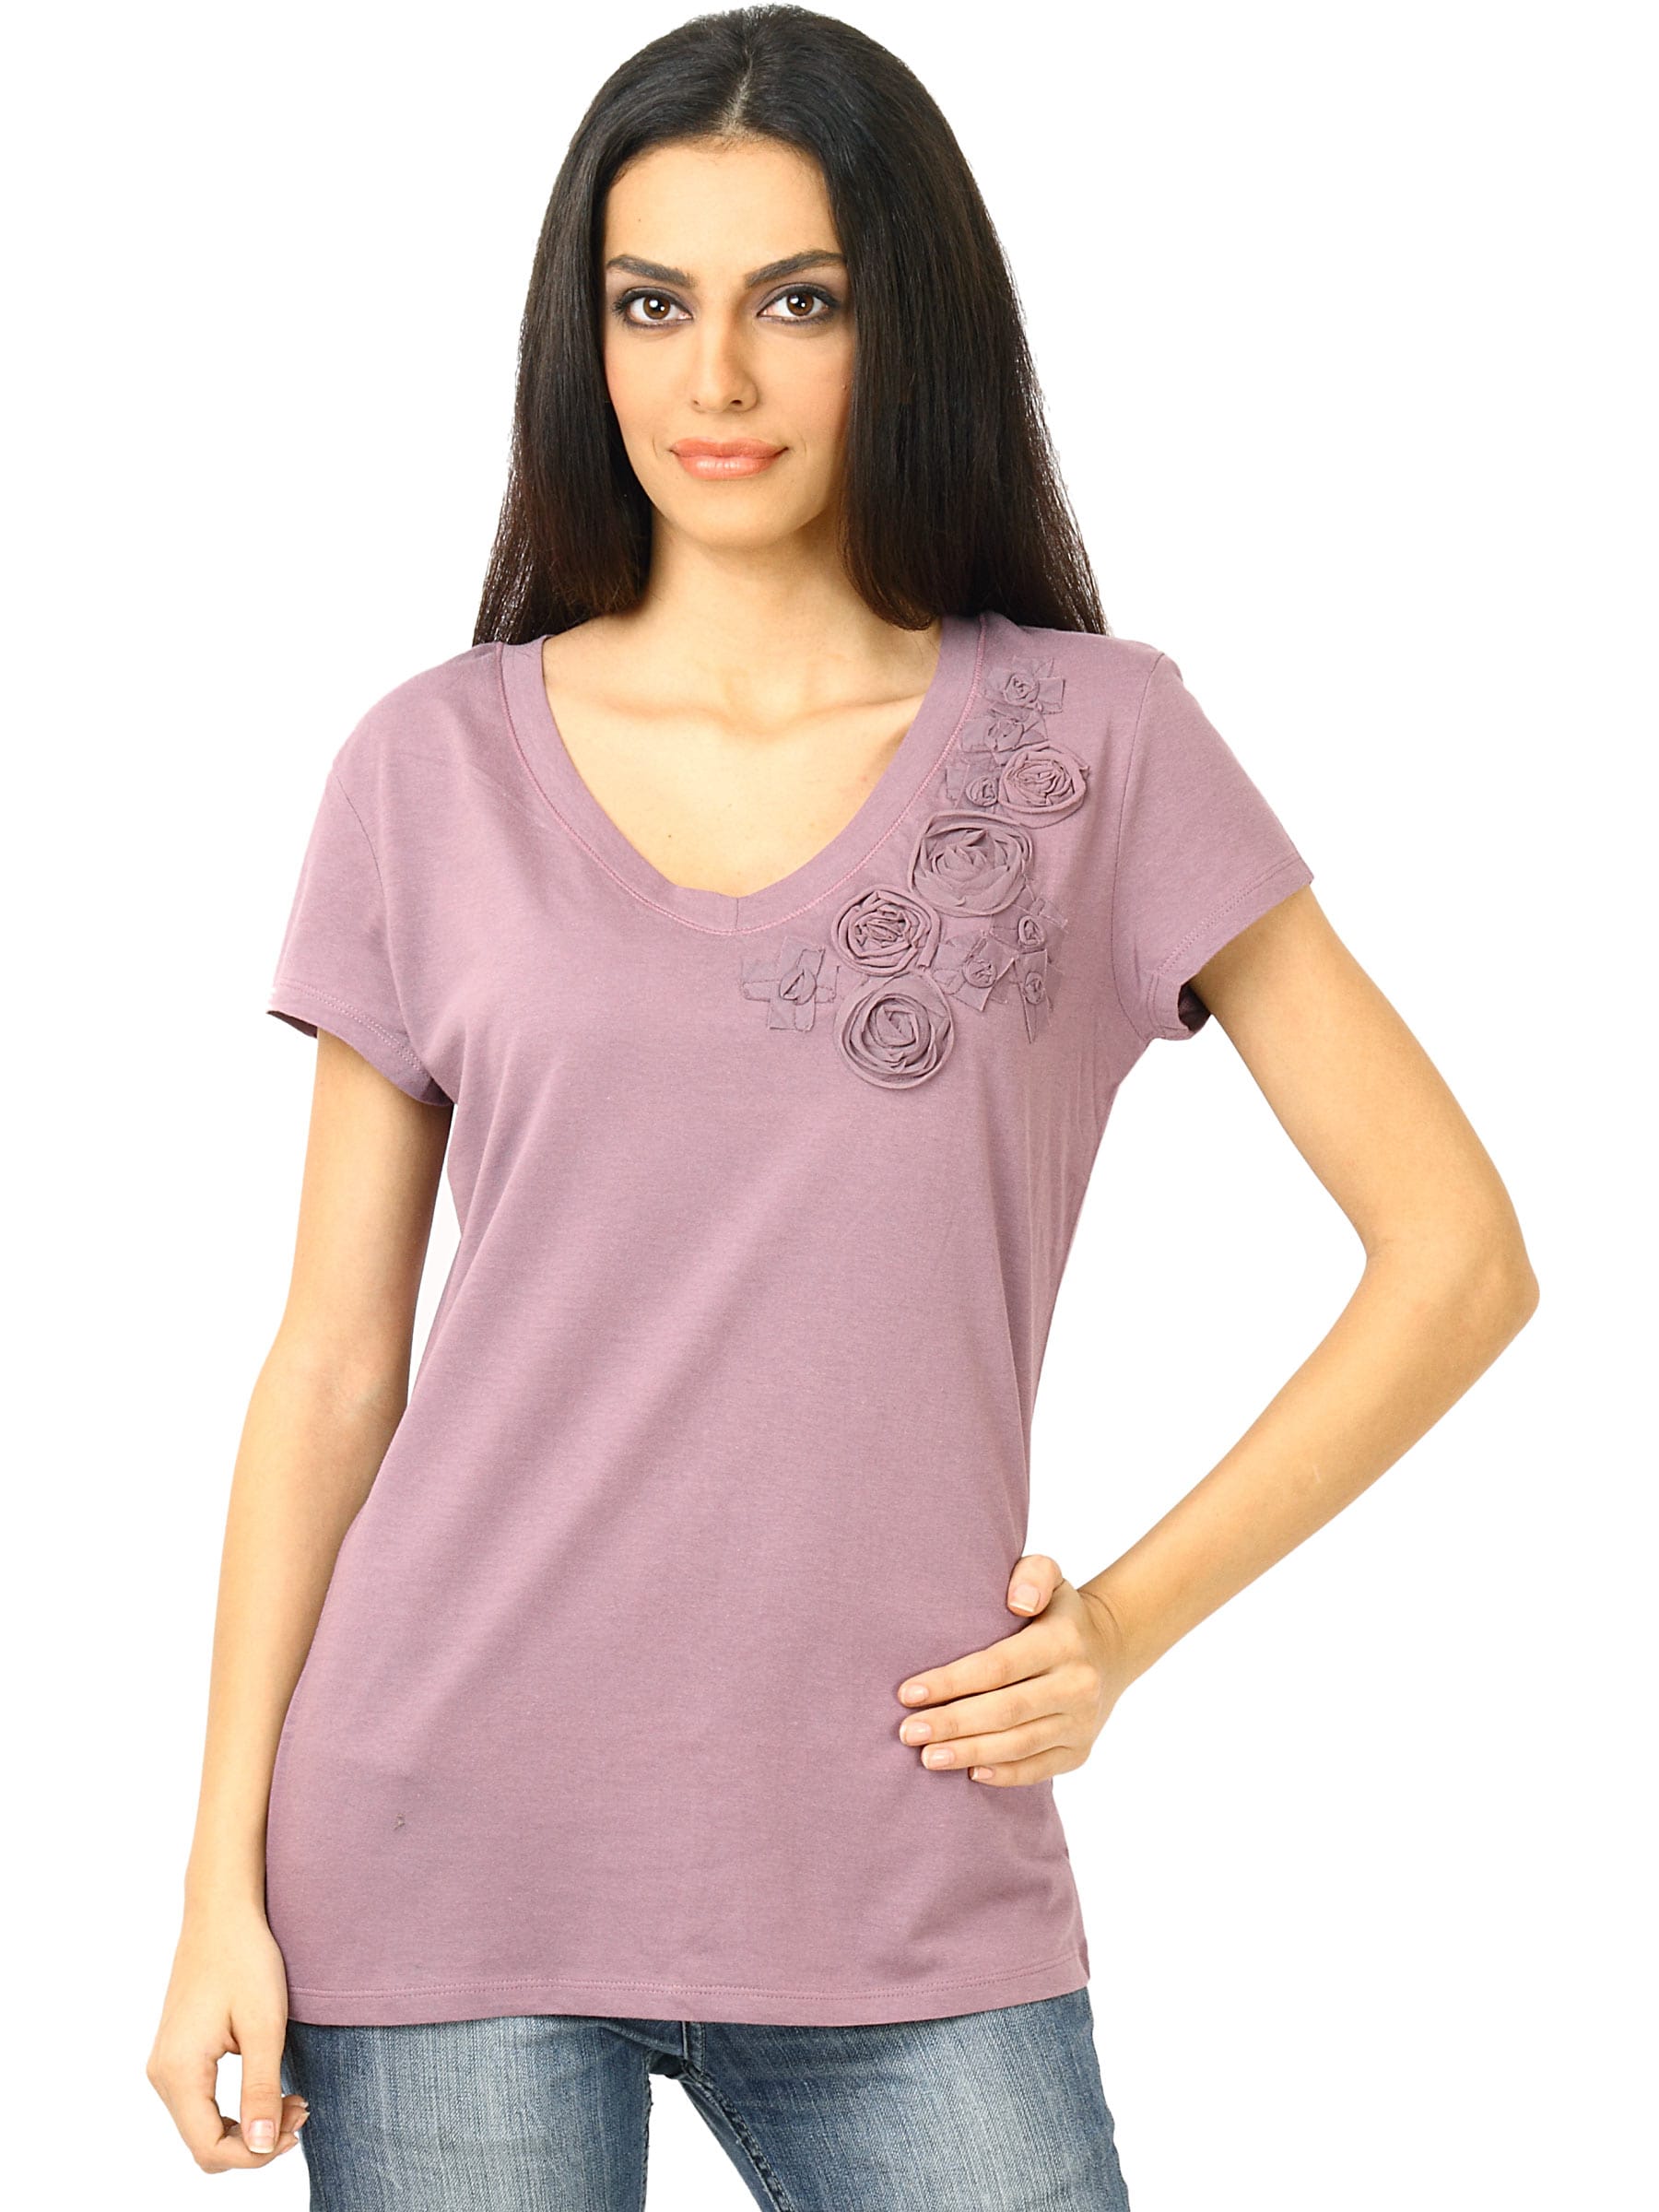 United Colors of Benetton Women Applique Work Purple T-shirt